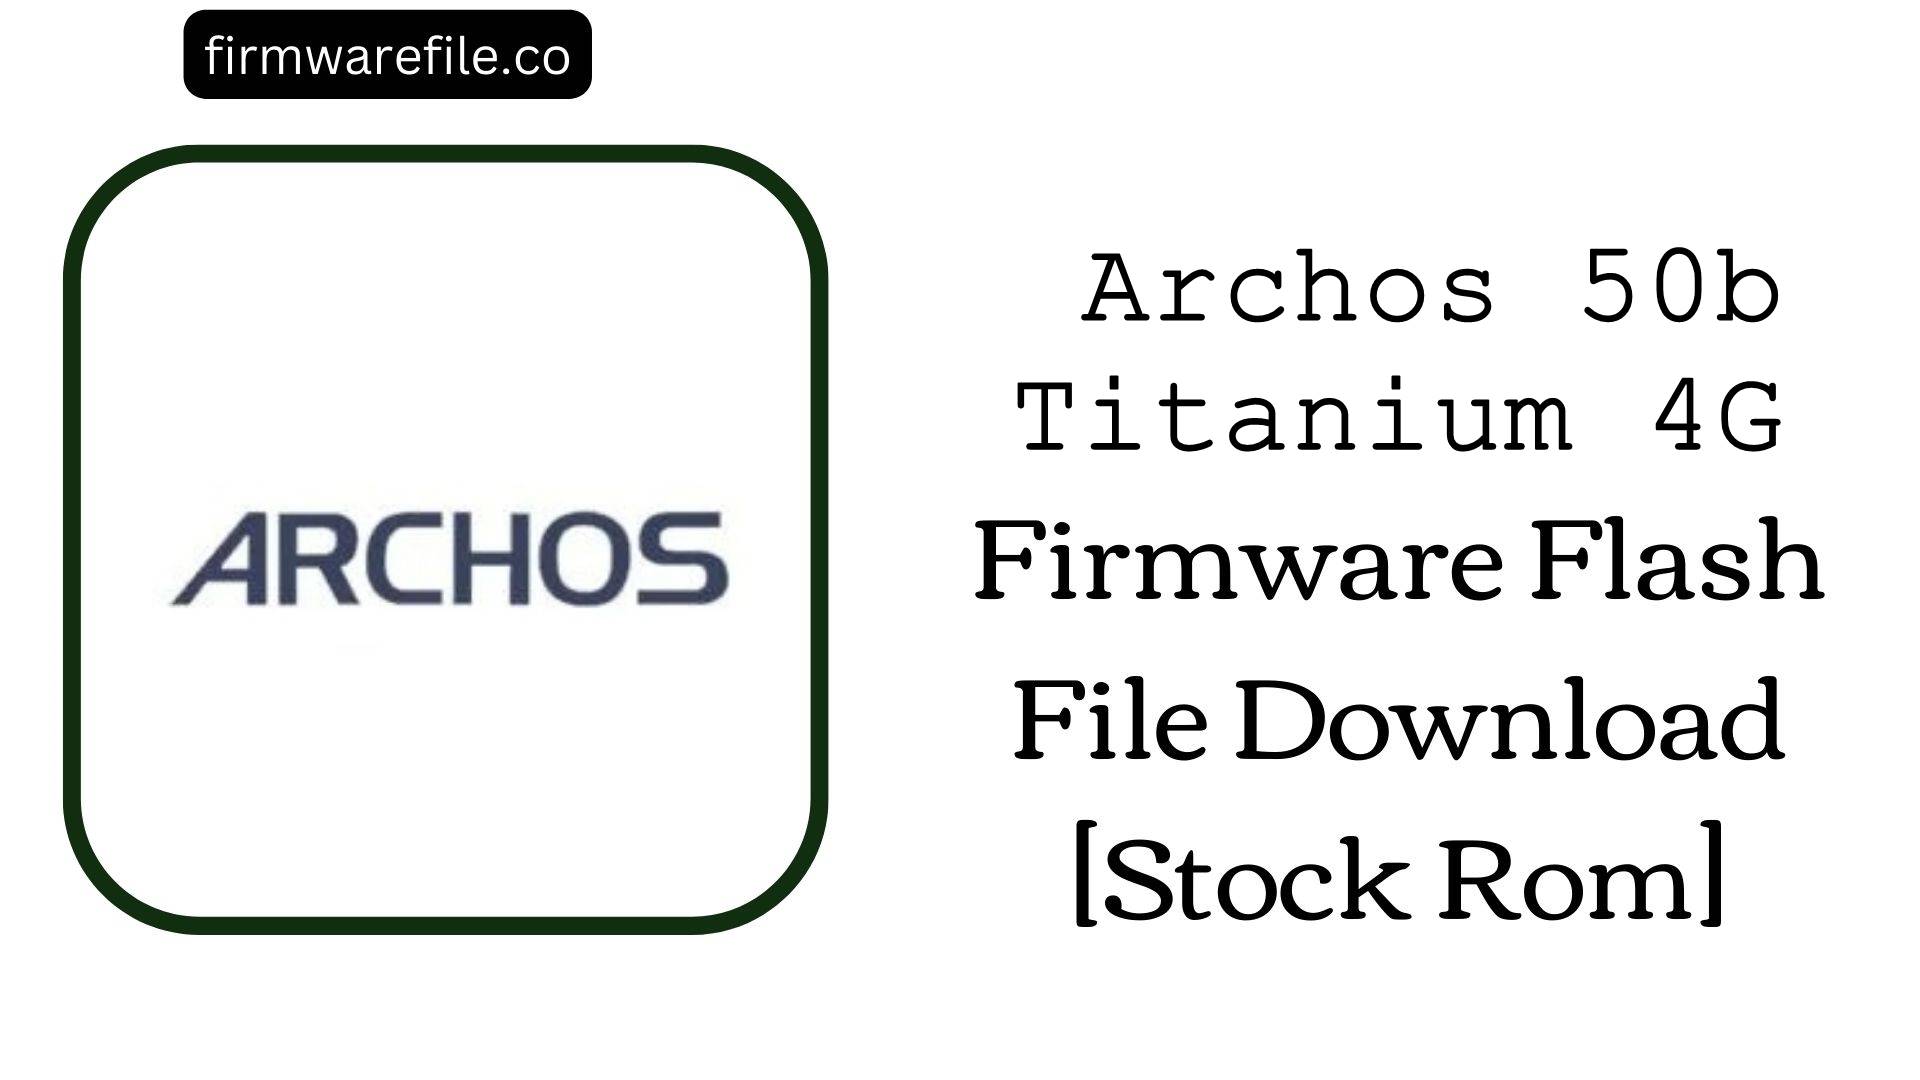 Archos 50b Titanium 4G